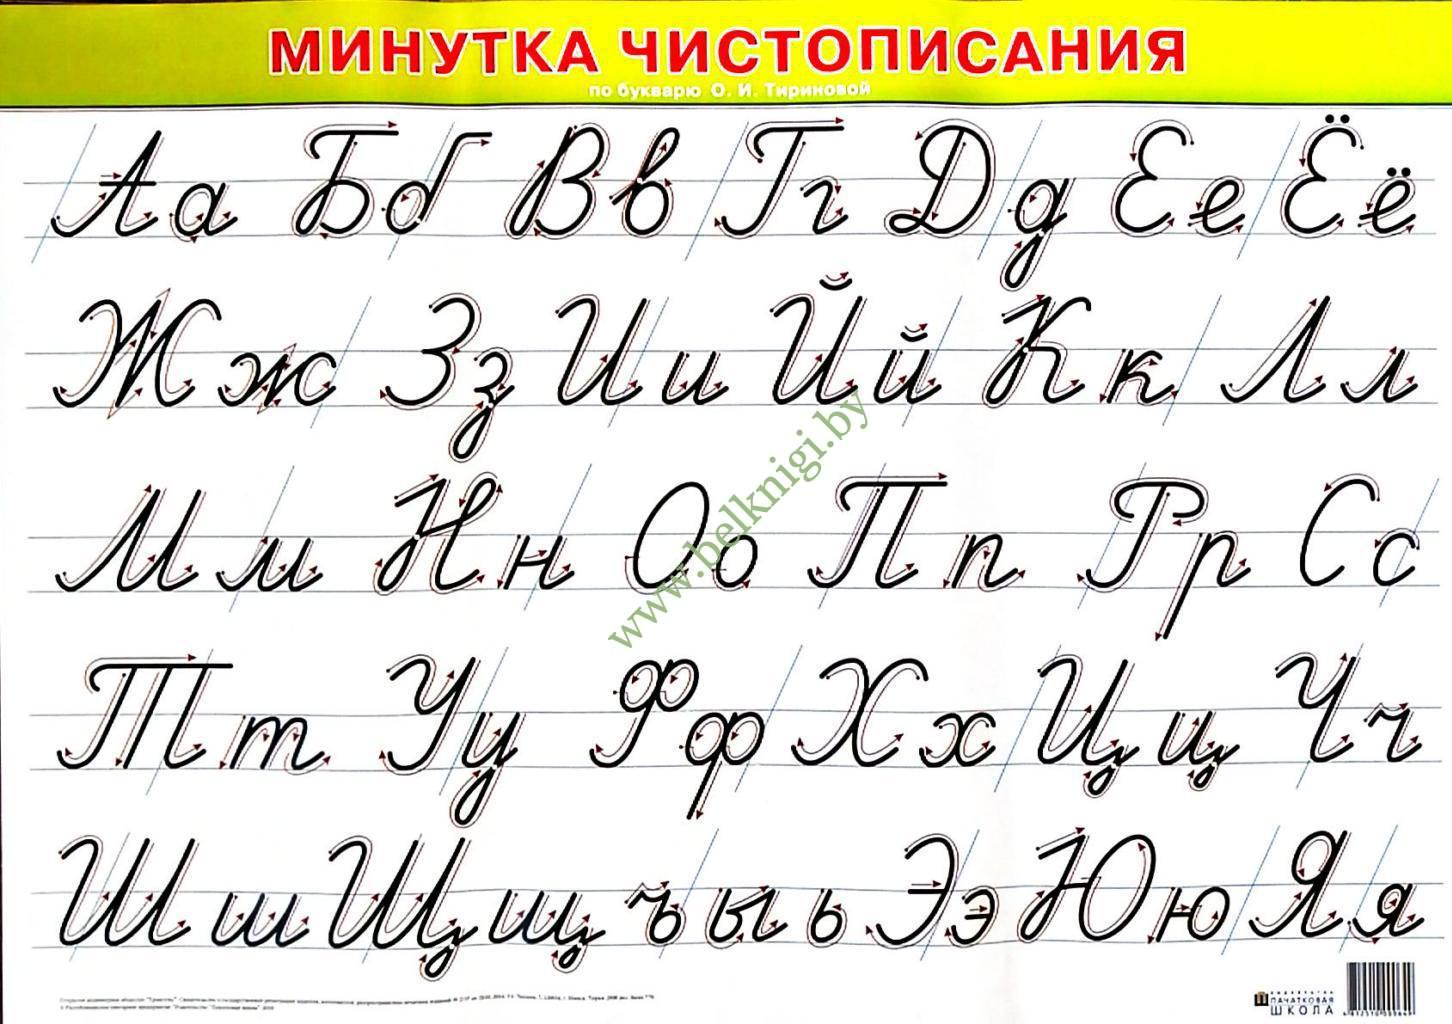 Прописные строчные буквы русского алфавита. Прописные буквы русского алфавита. Как пишутся прописные буквы русского алфавита. Как правильно писать прописные буквы русского алфавита. Как пишутся прописные буквы русского алфавита для 1 класса.